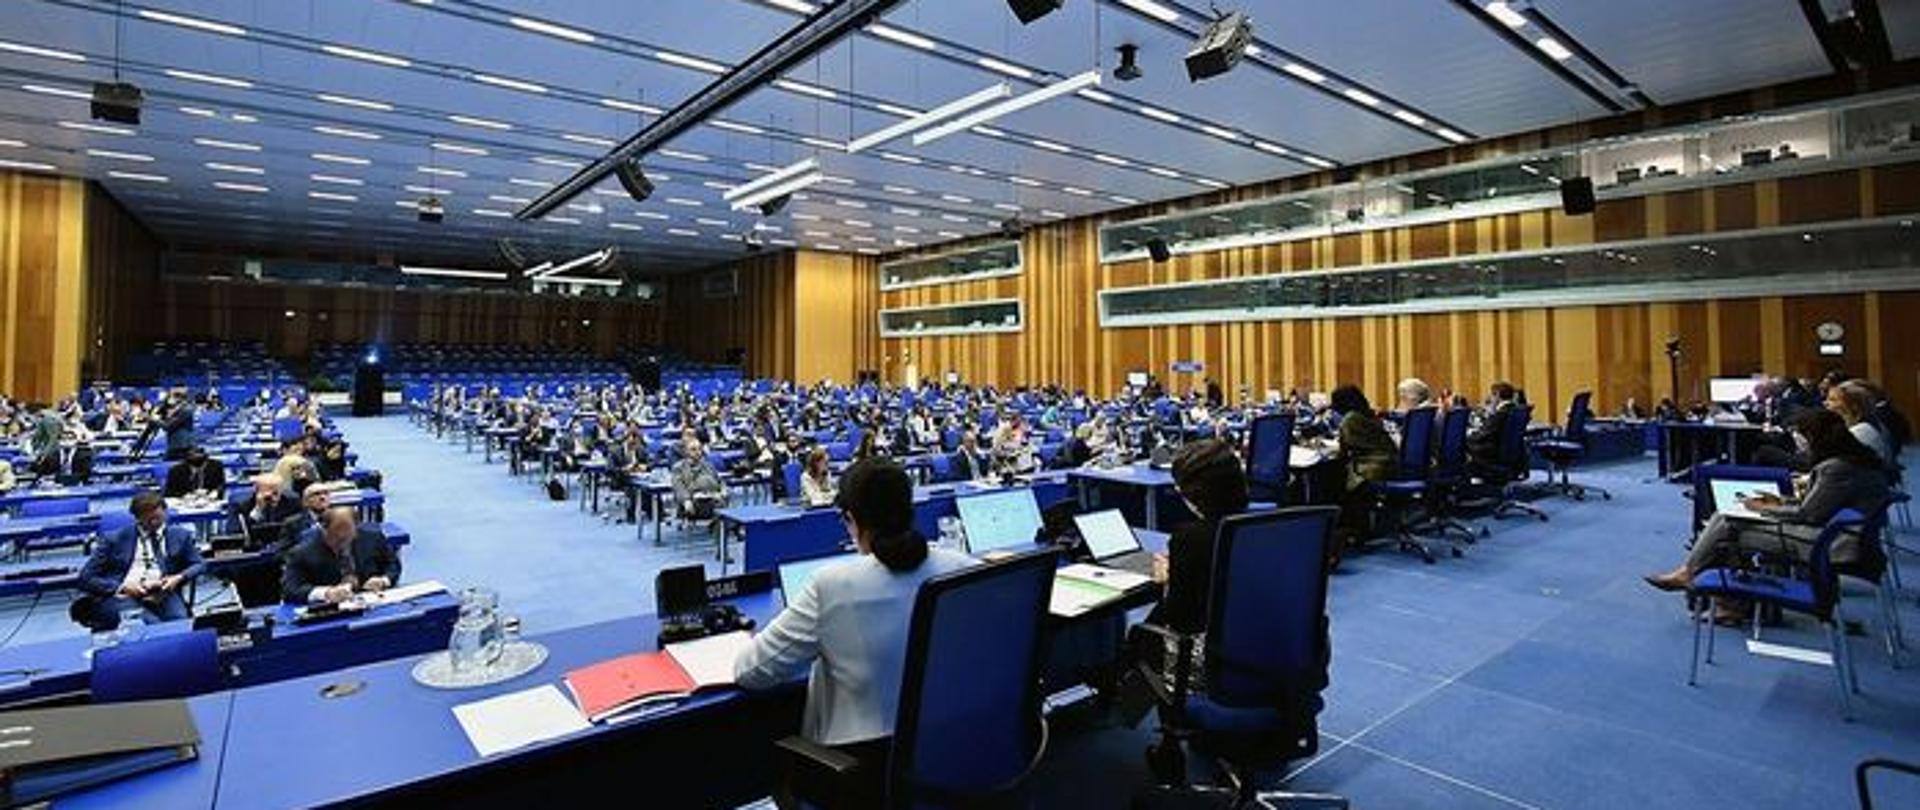 Spotkanie_Rady_Gubernatorów_IAEA_(fot_D_CalmaIAEA)